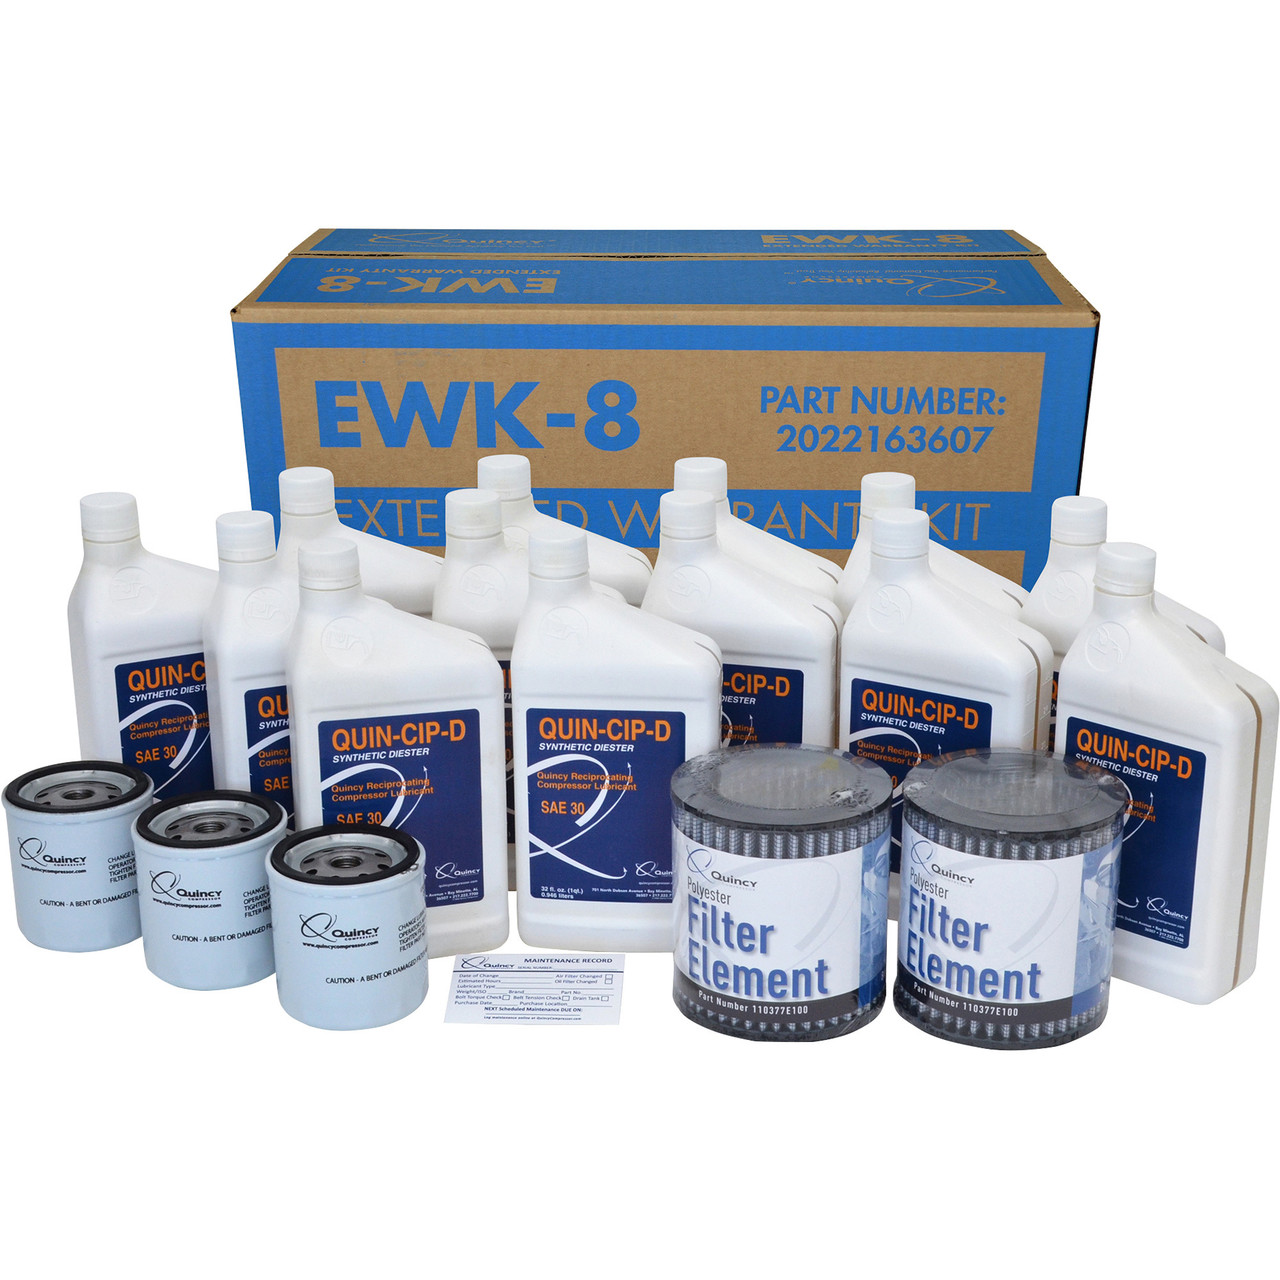 Quincy Extended Warranty Kit - EWK-8